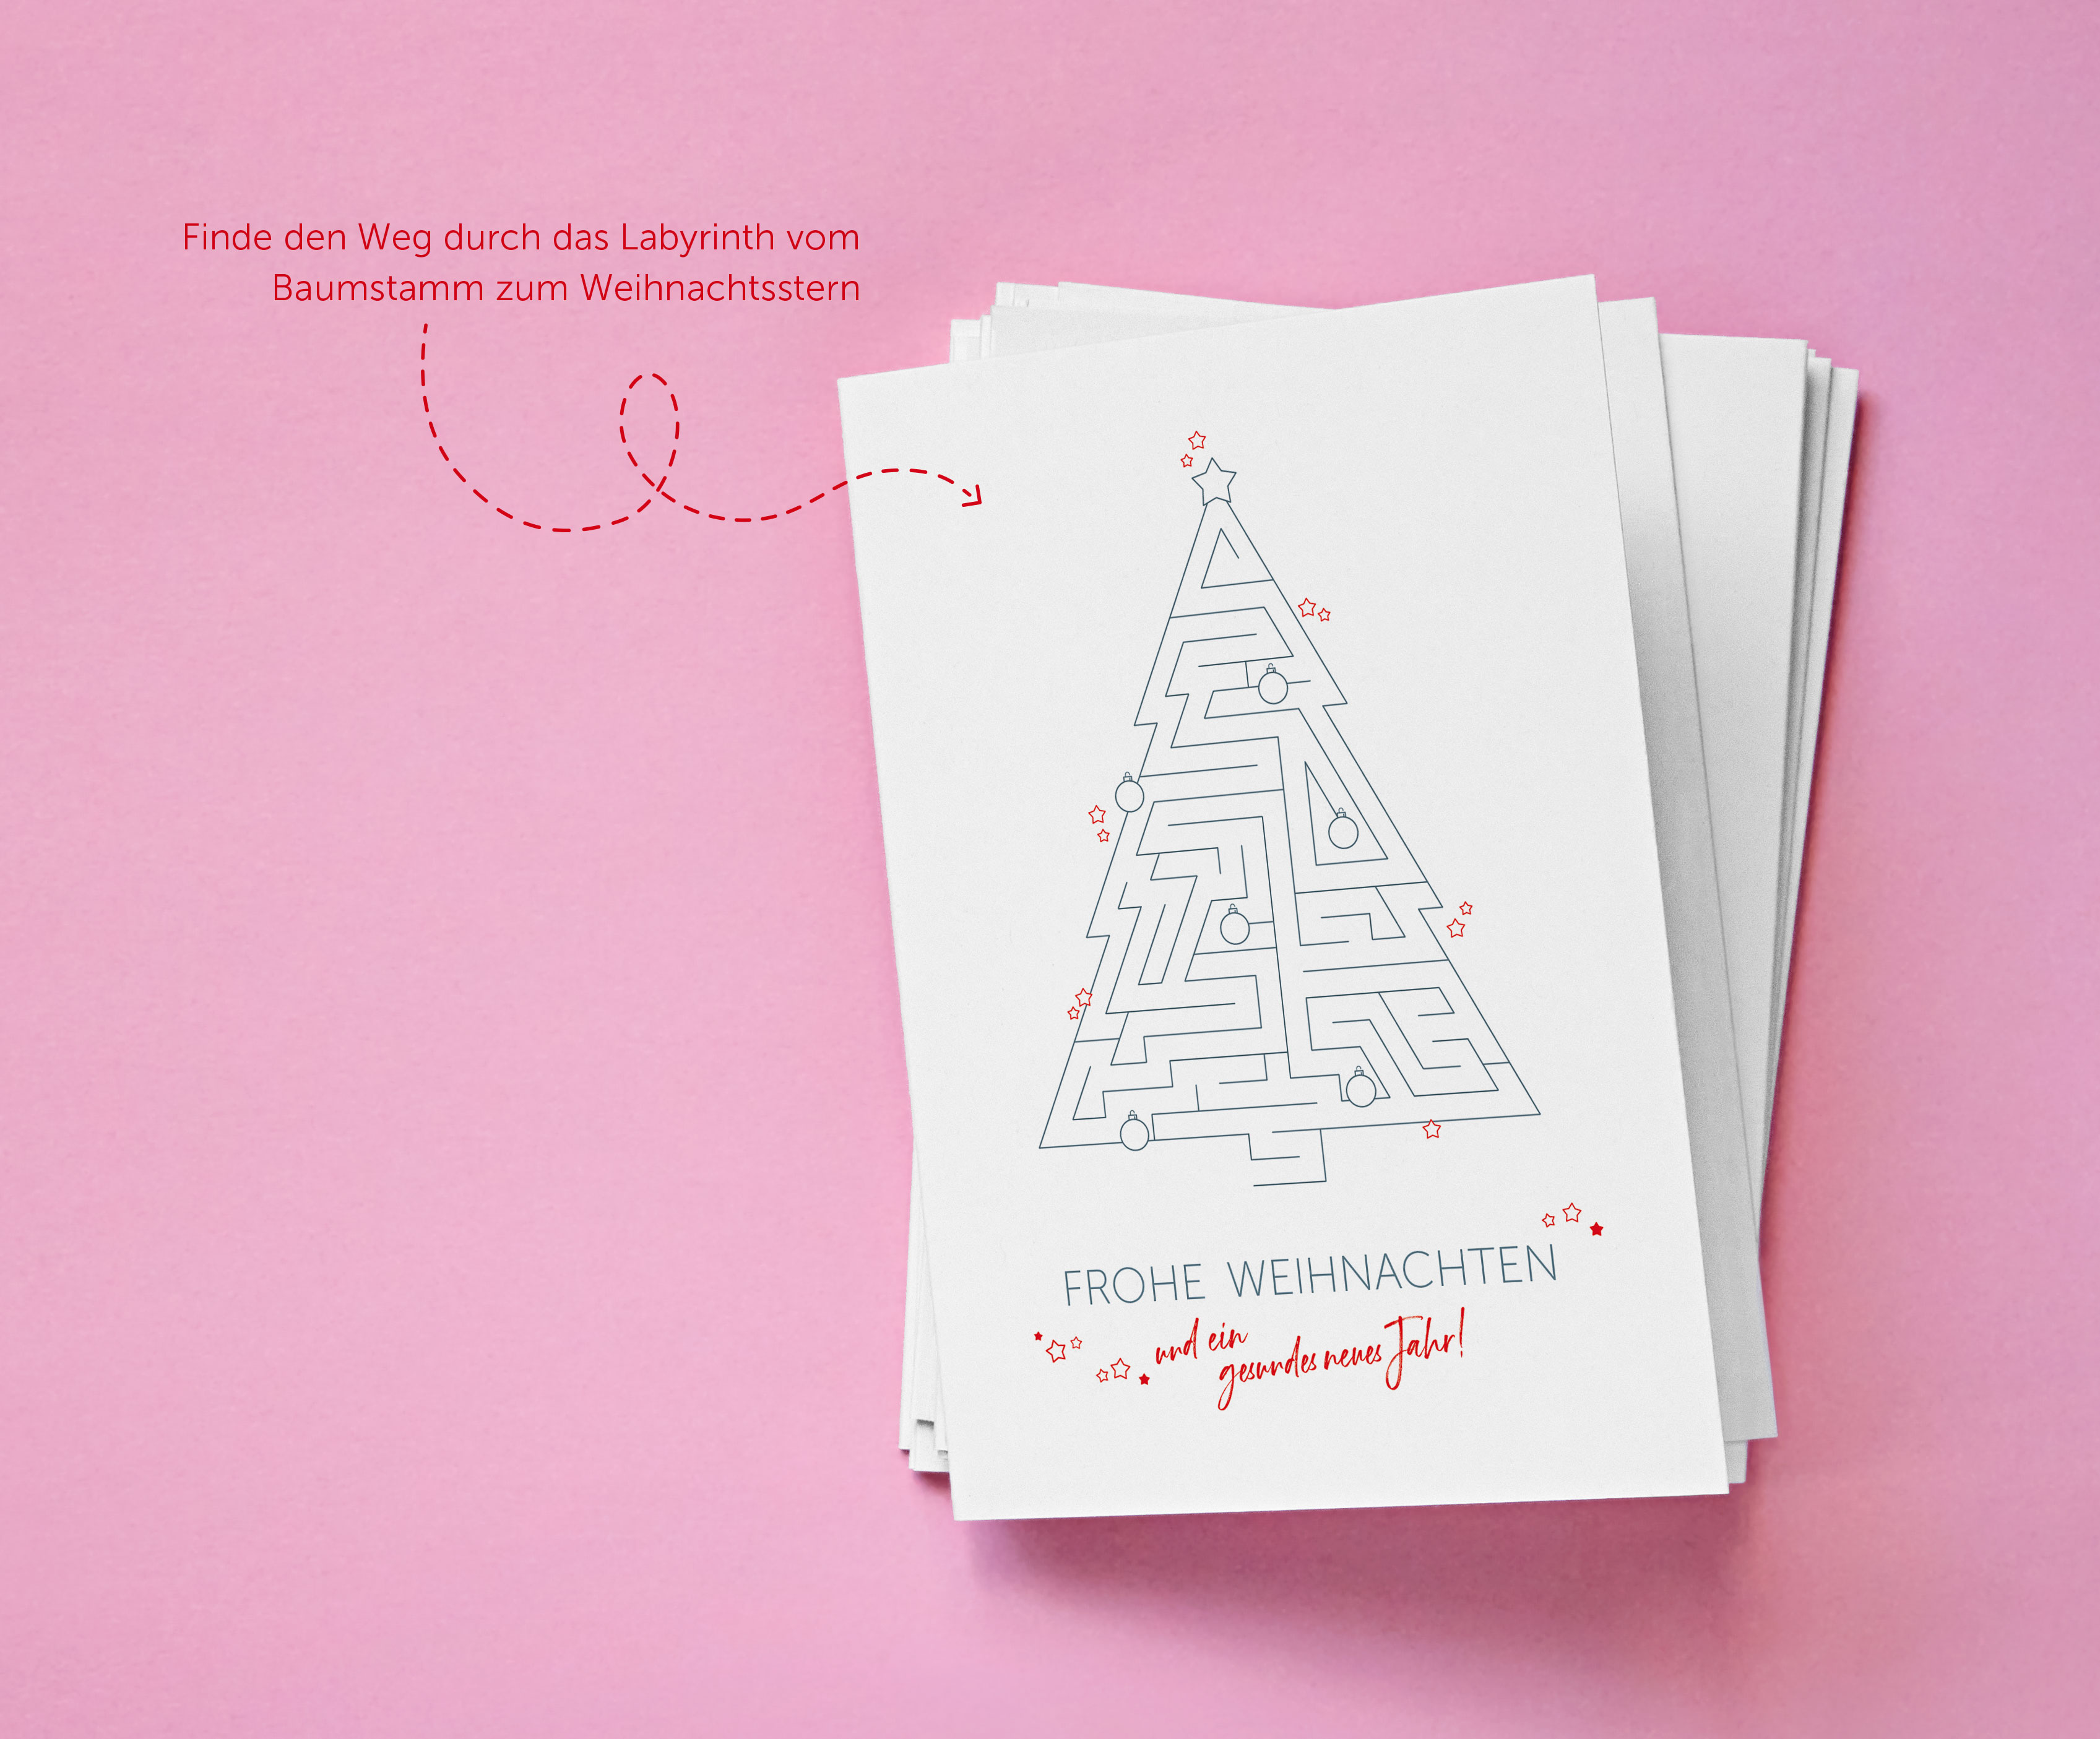 Die Weihnachtskarte mit kreativem Labyrinth